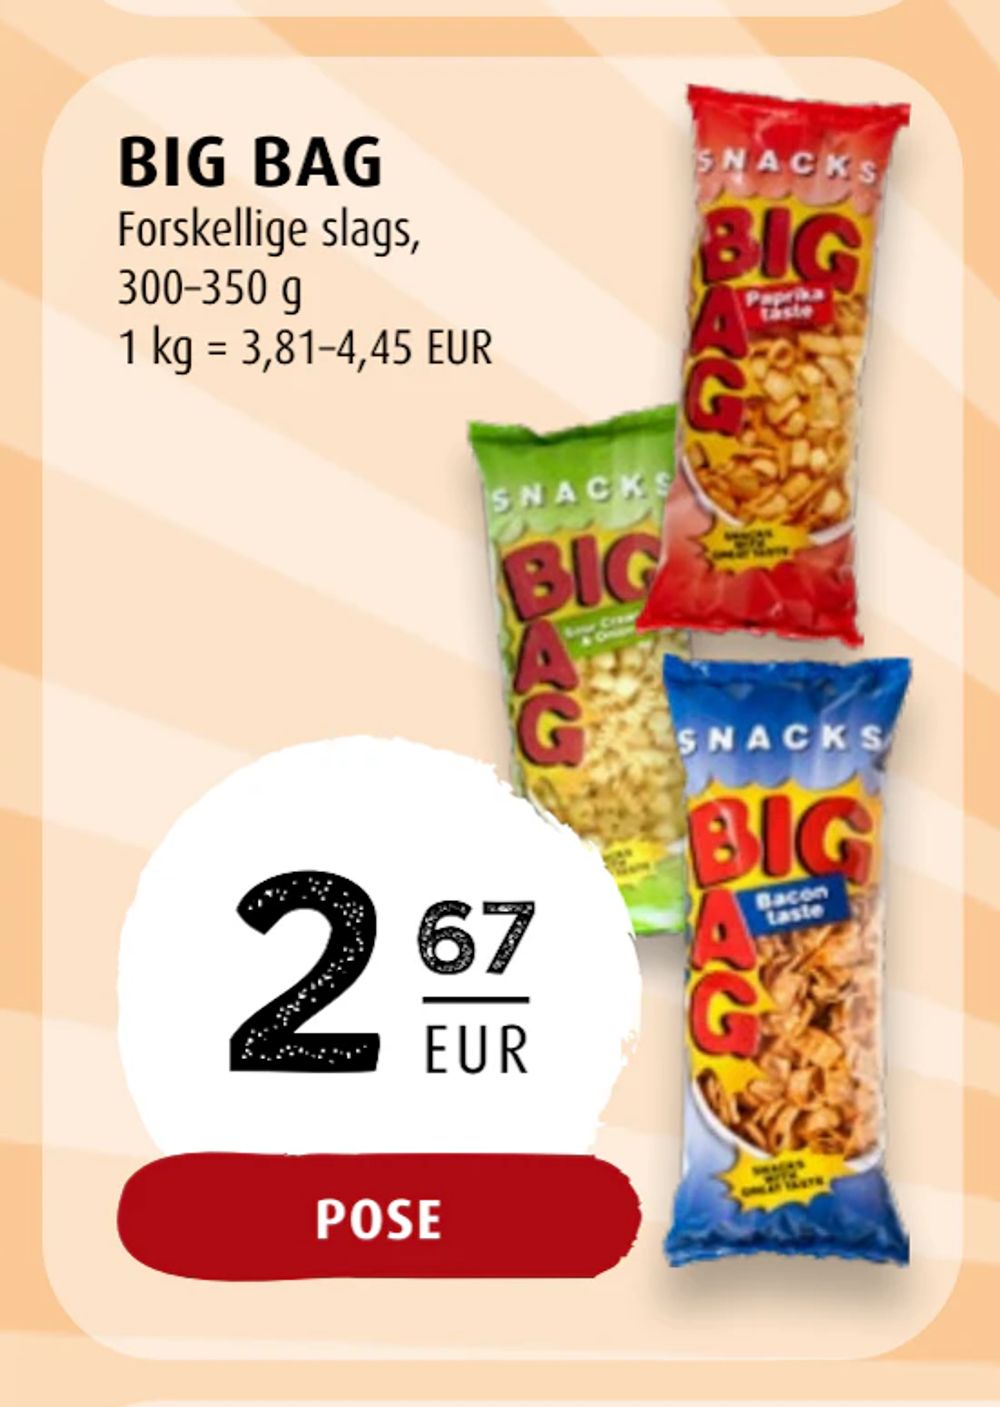 Tilbud på BIG BAG fra Scandinavian Park til 2,67 €